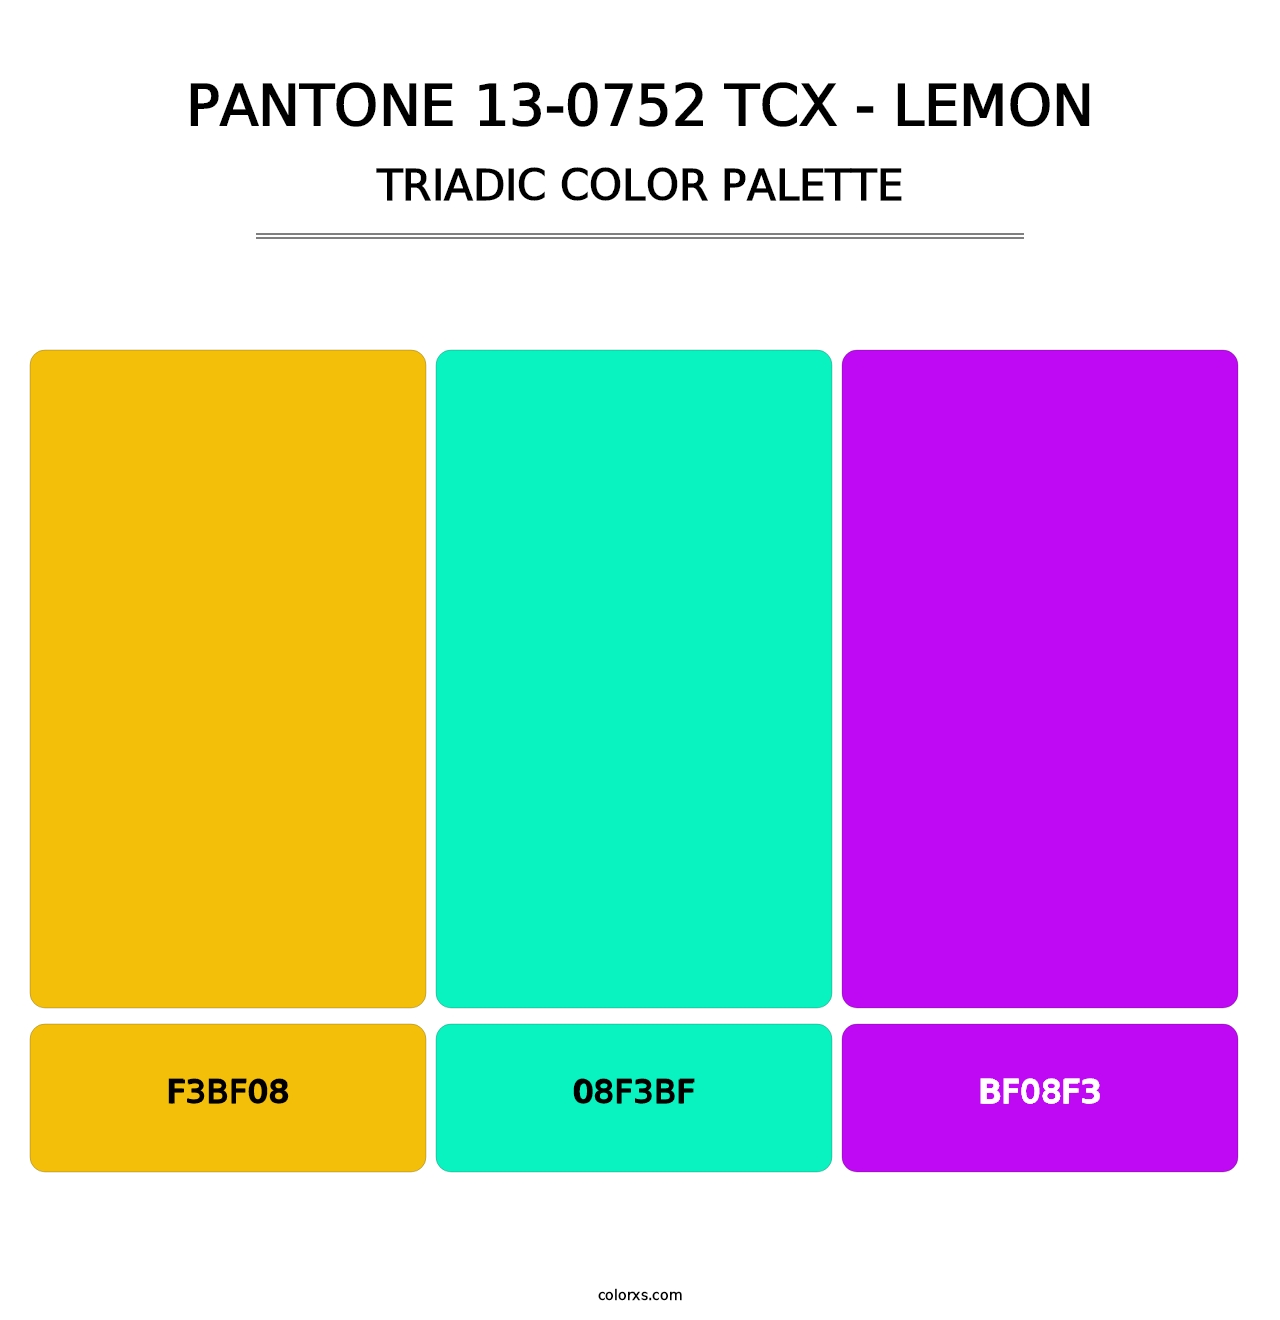 PANTONE 13-0752 TCX - Lemon - Triadic Color Palette